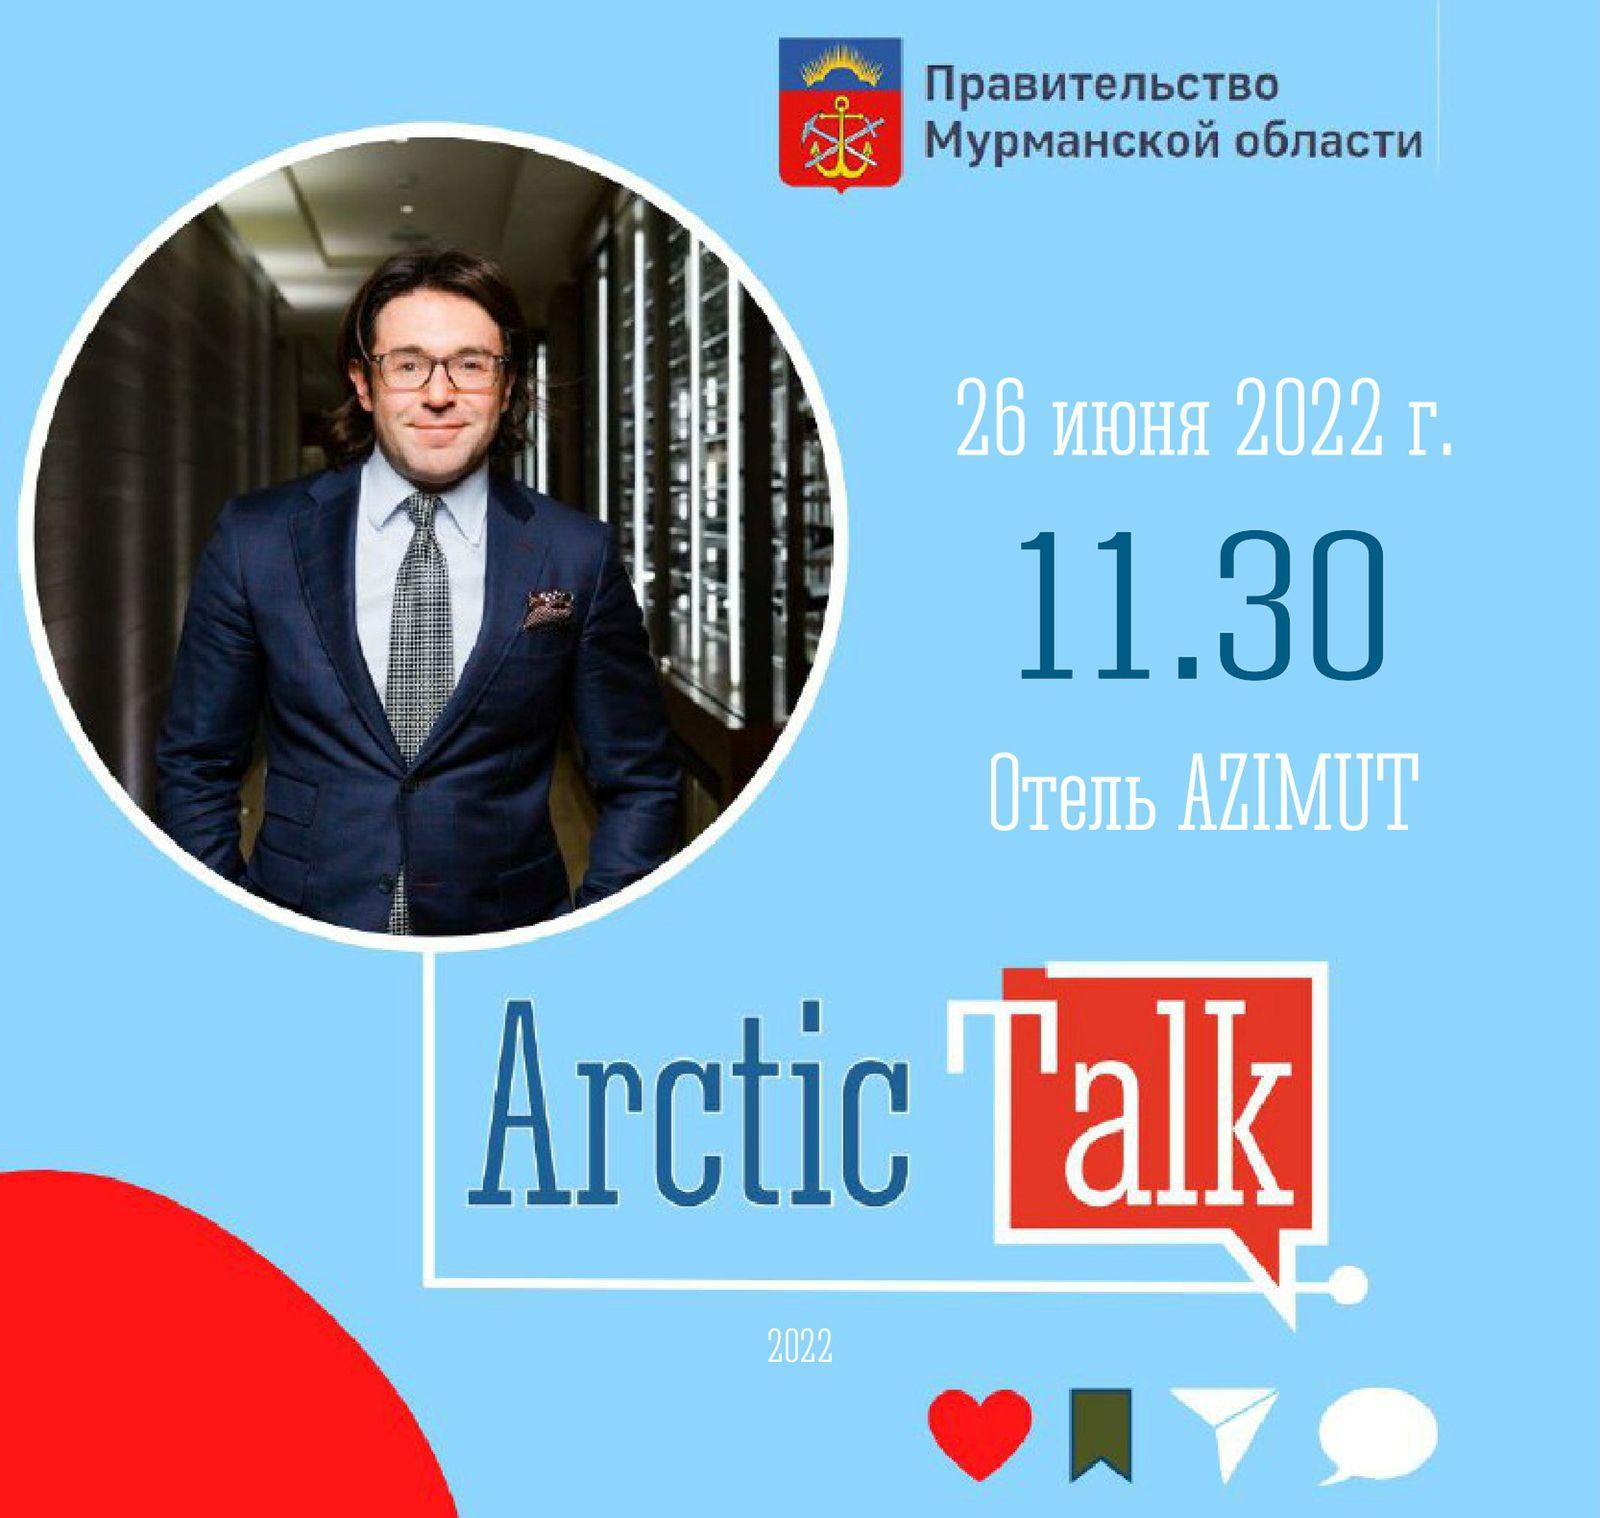 ArcticTalk 2022 